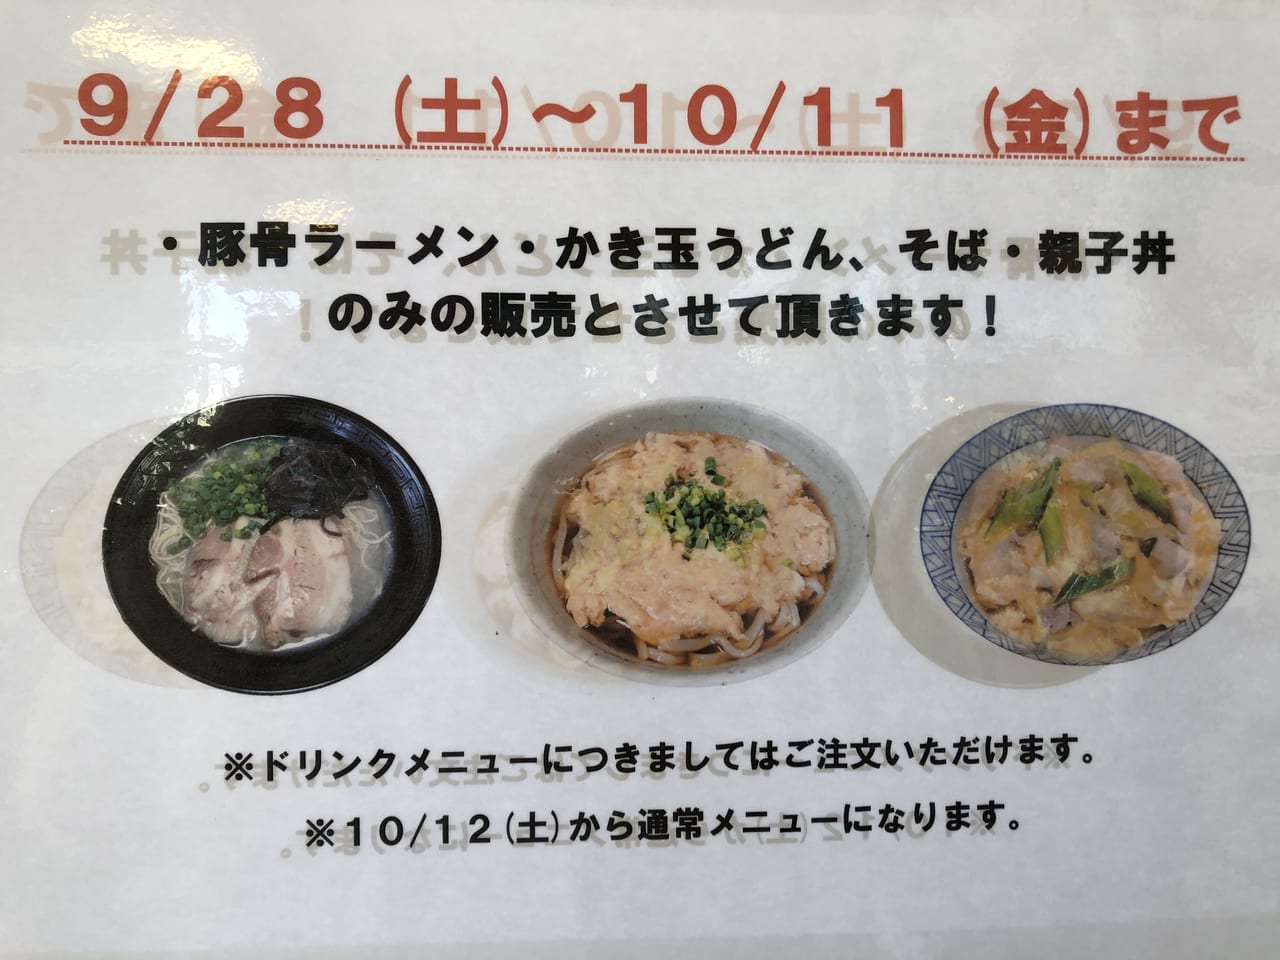 麺麺麺2019年諦めてリニューアルオープン